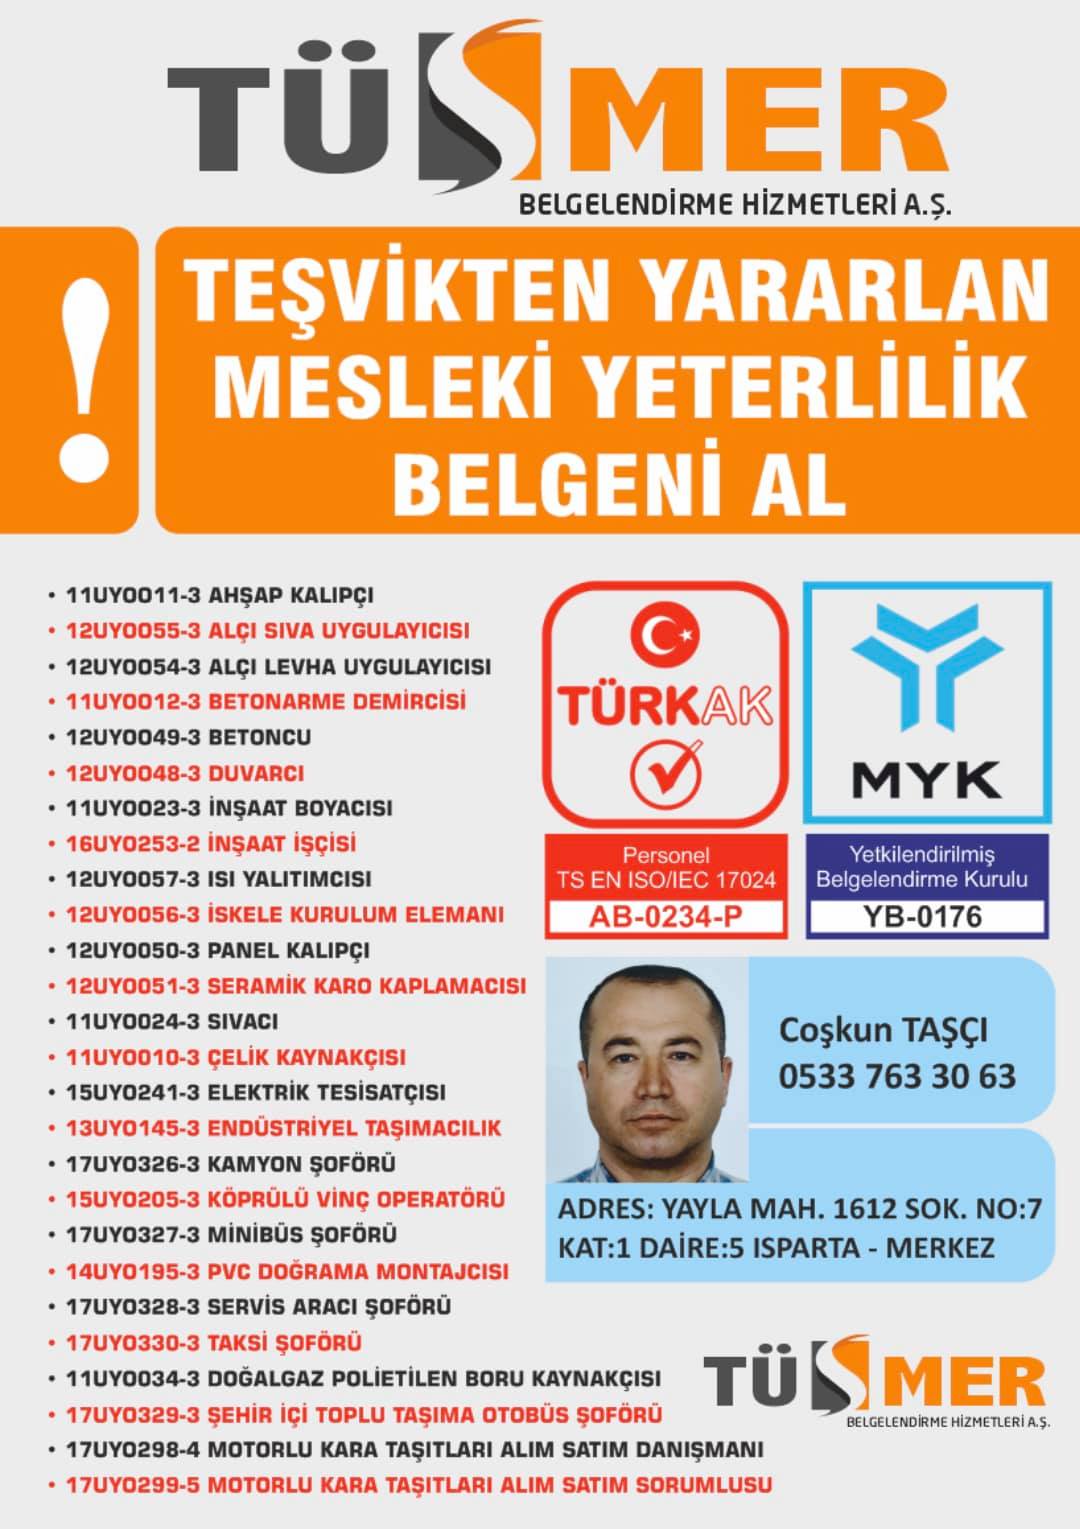 MYK MESLEKİ YETERLİLİK BELGESİ Muradiye Beşiktaş İstanbul